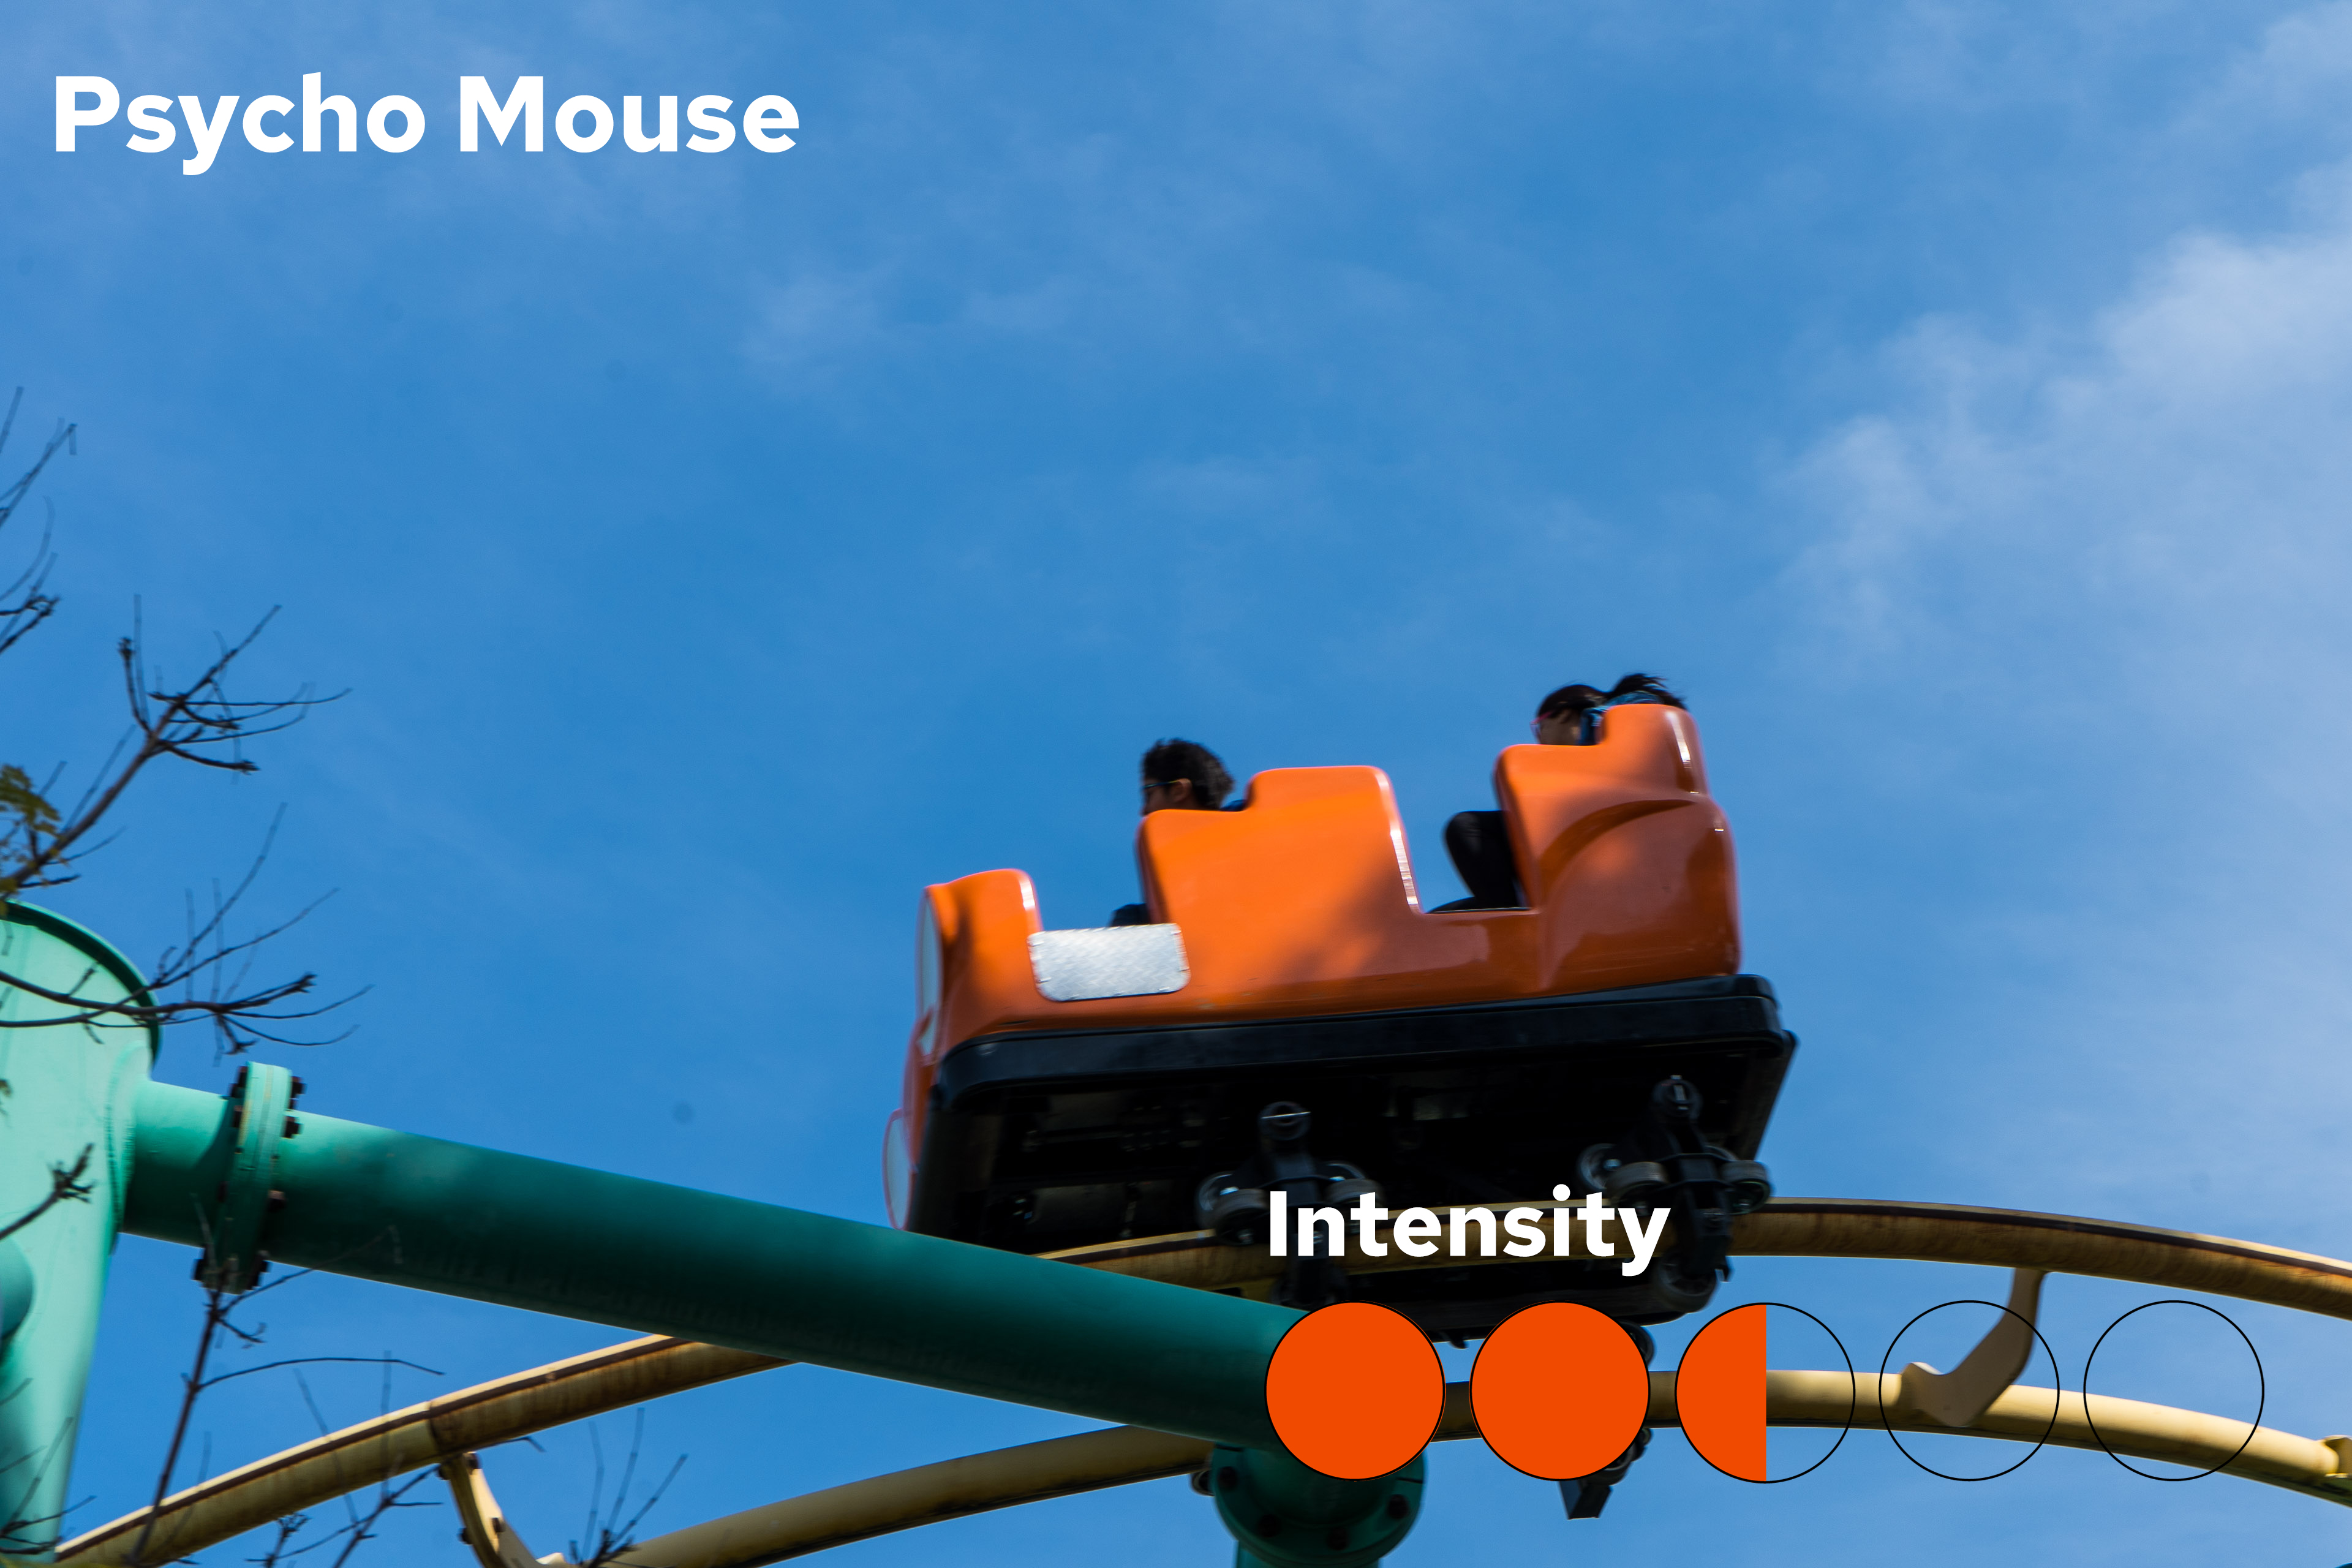 Psycho Mouse Intensity